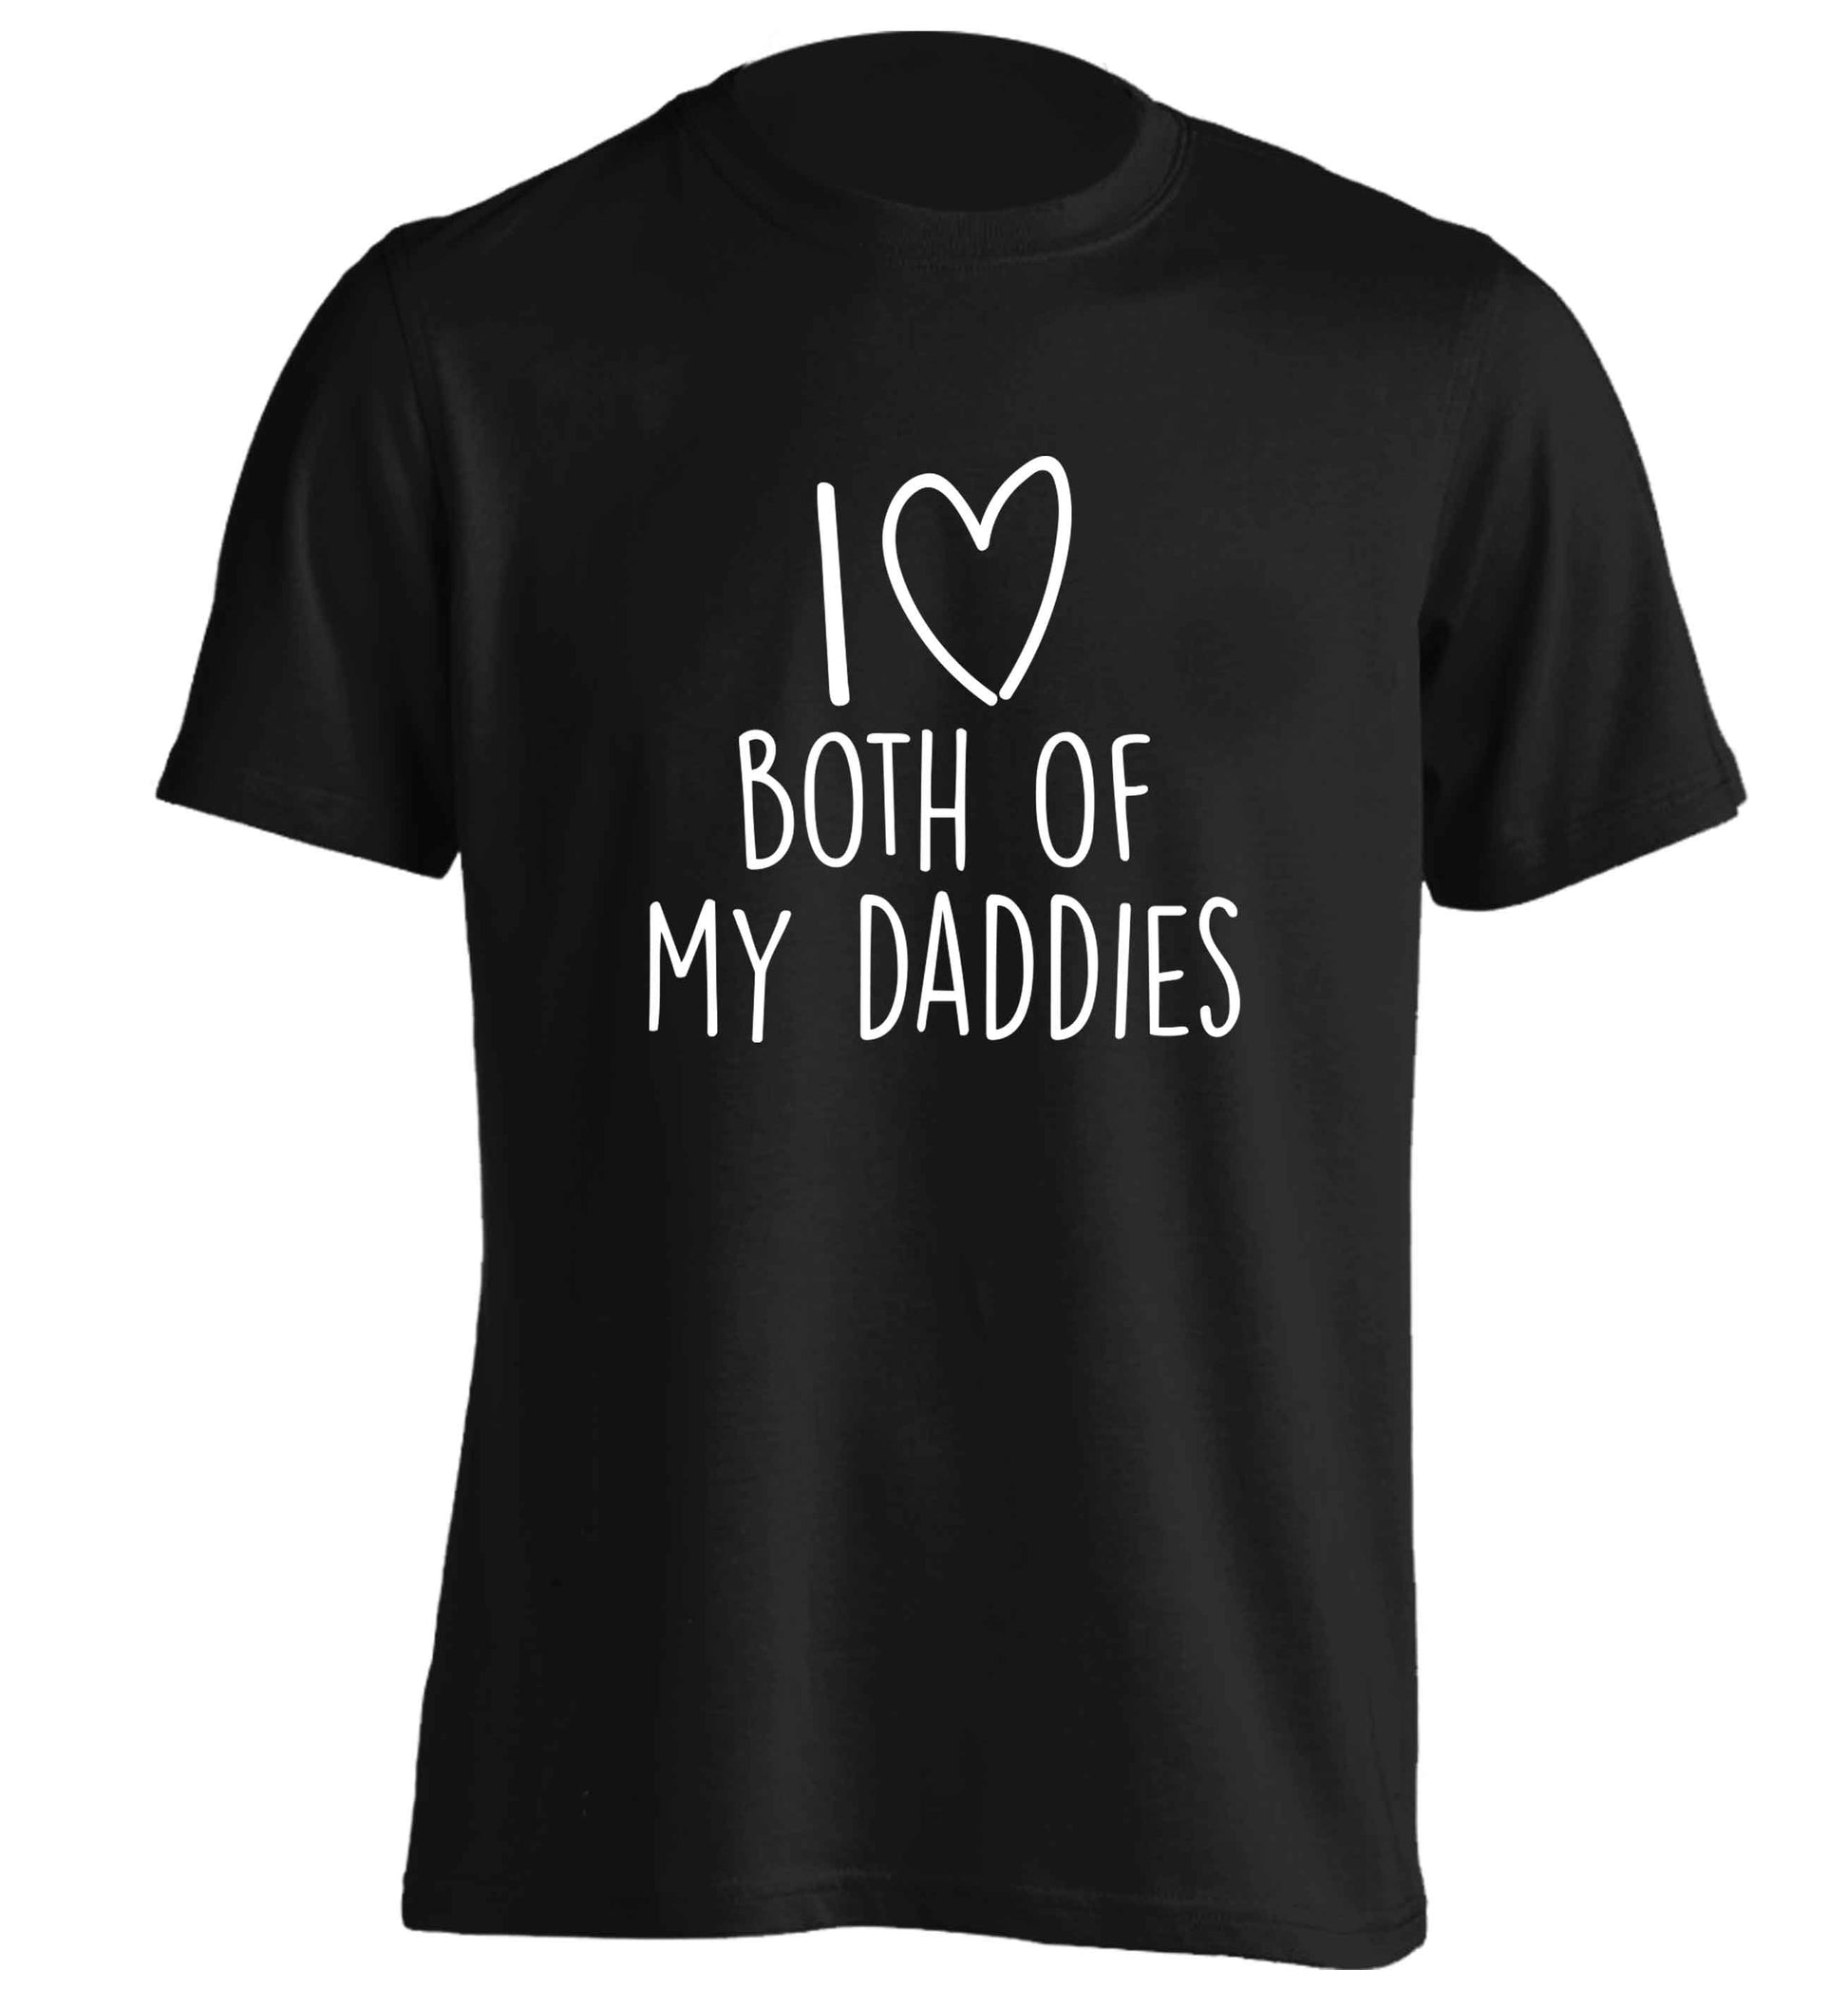 I love both of my daddies adults unisex black Tshirt 2XL